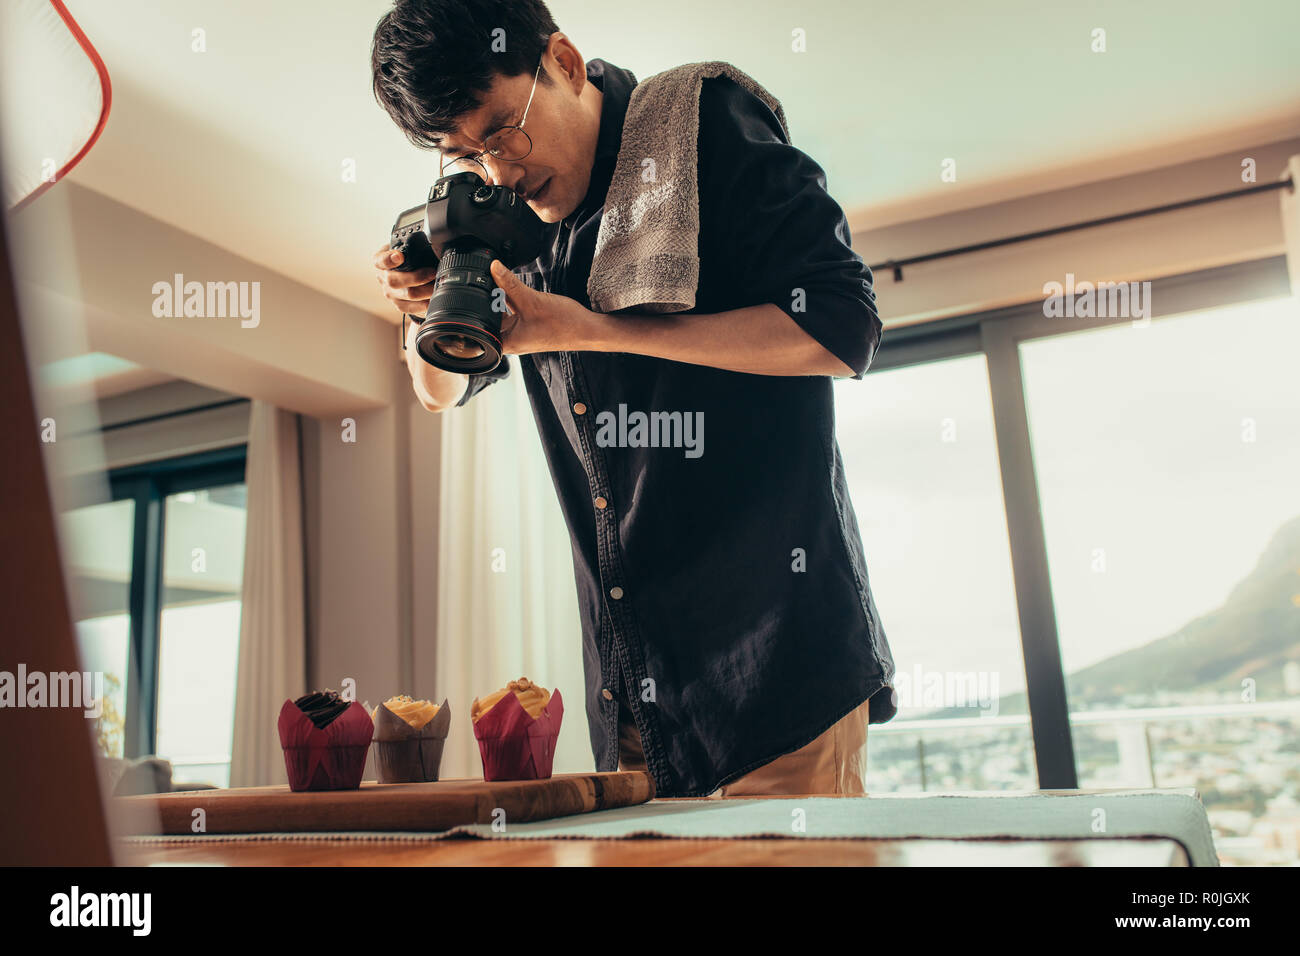 Professional cibo fotografo fotografare le tortine su tavola con fotocamera reflex digitale. Fotografo maschio a scattare foto di cibo dolce. Foto Stock